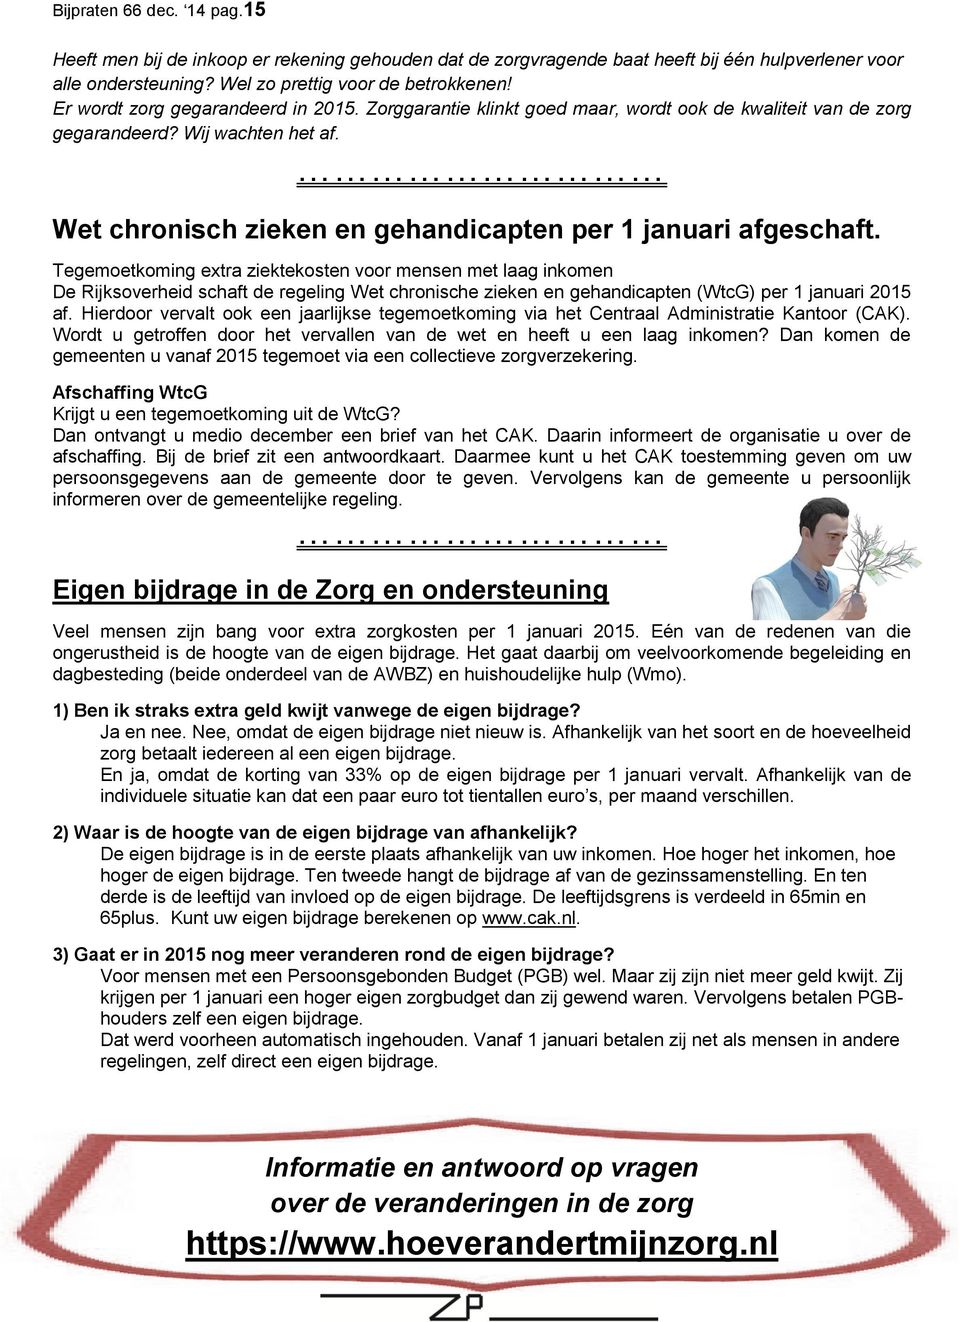 Tegemoetkoming extra ziektekosten voor mensen met laag inkomen De Rijksoverheid schaft de regeling Wet chronische zieken en gehandicapten (WtcG) per 1 januari 2015 af.